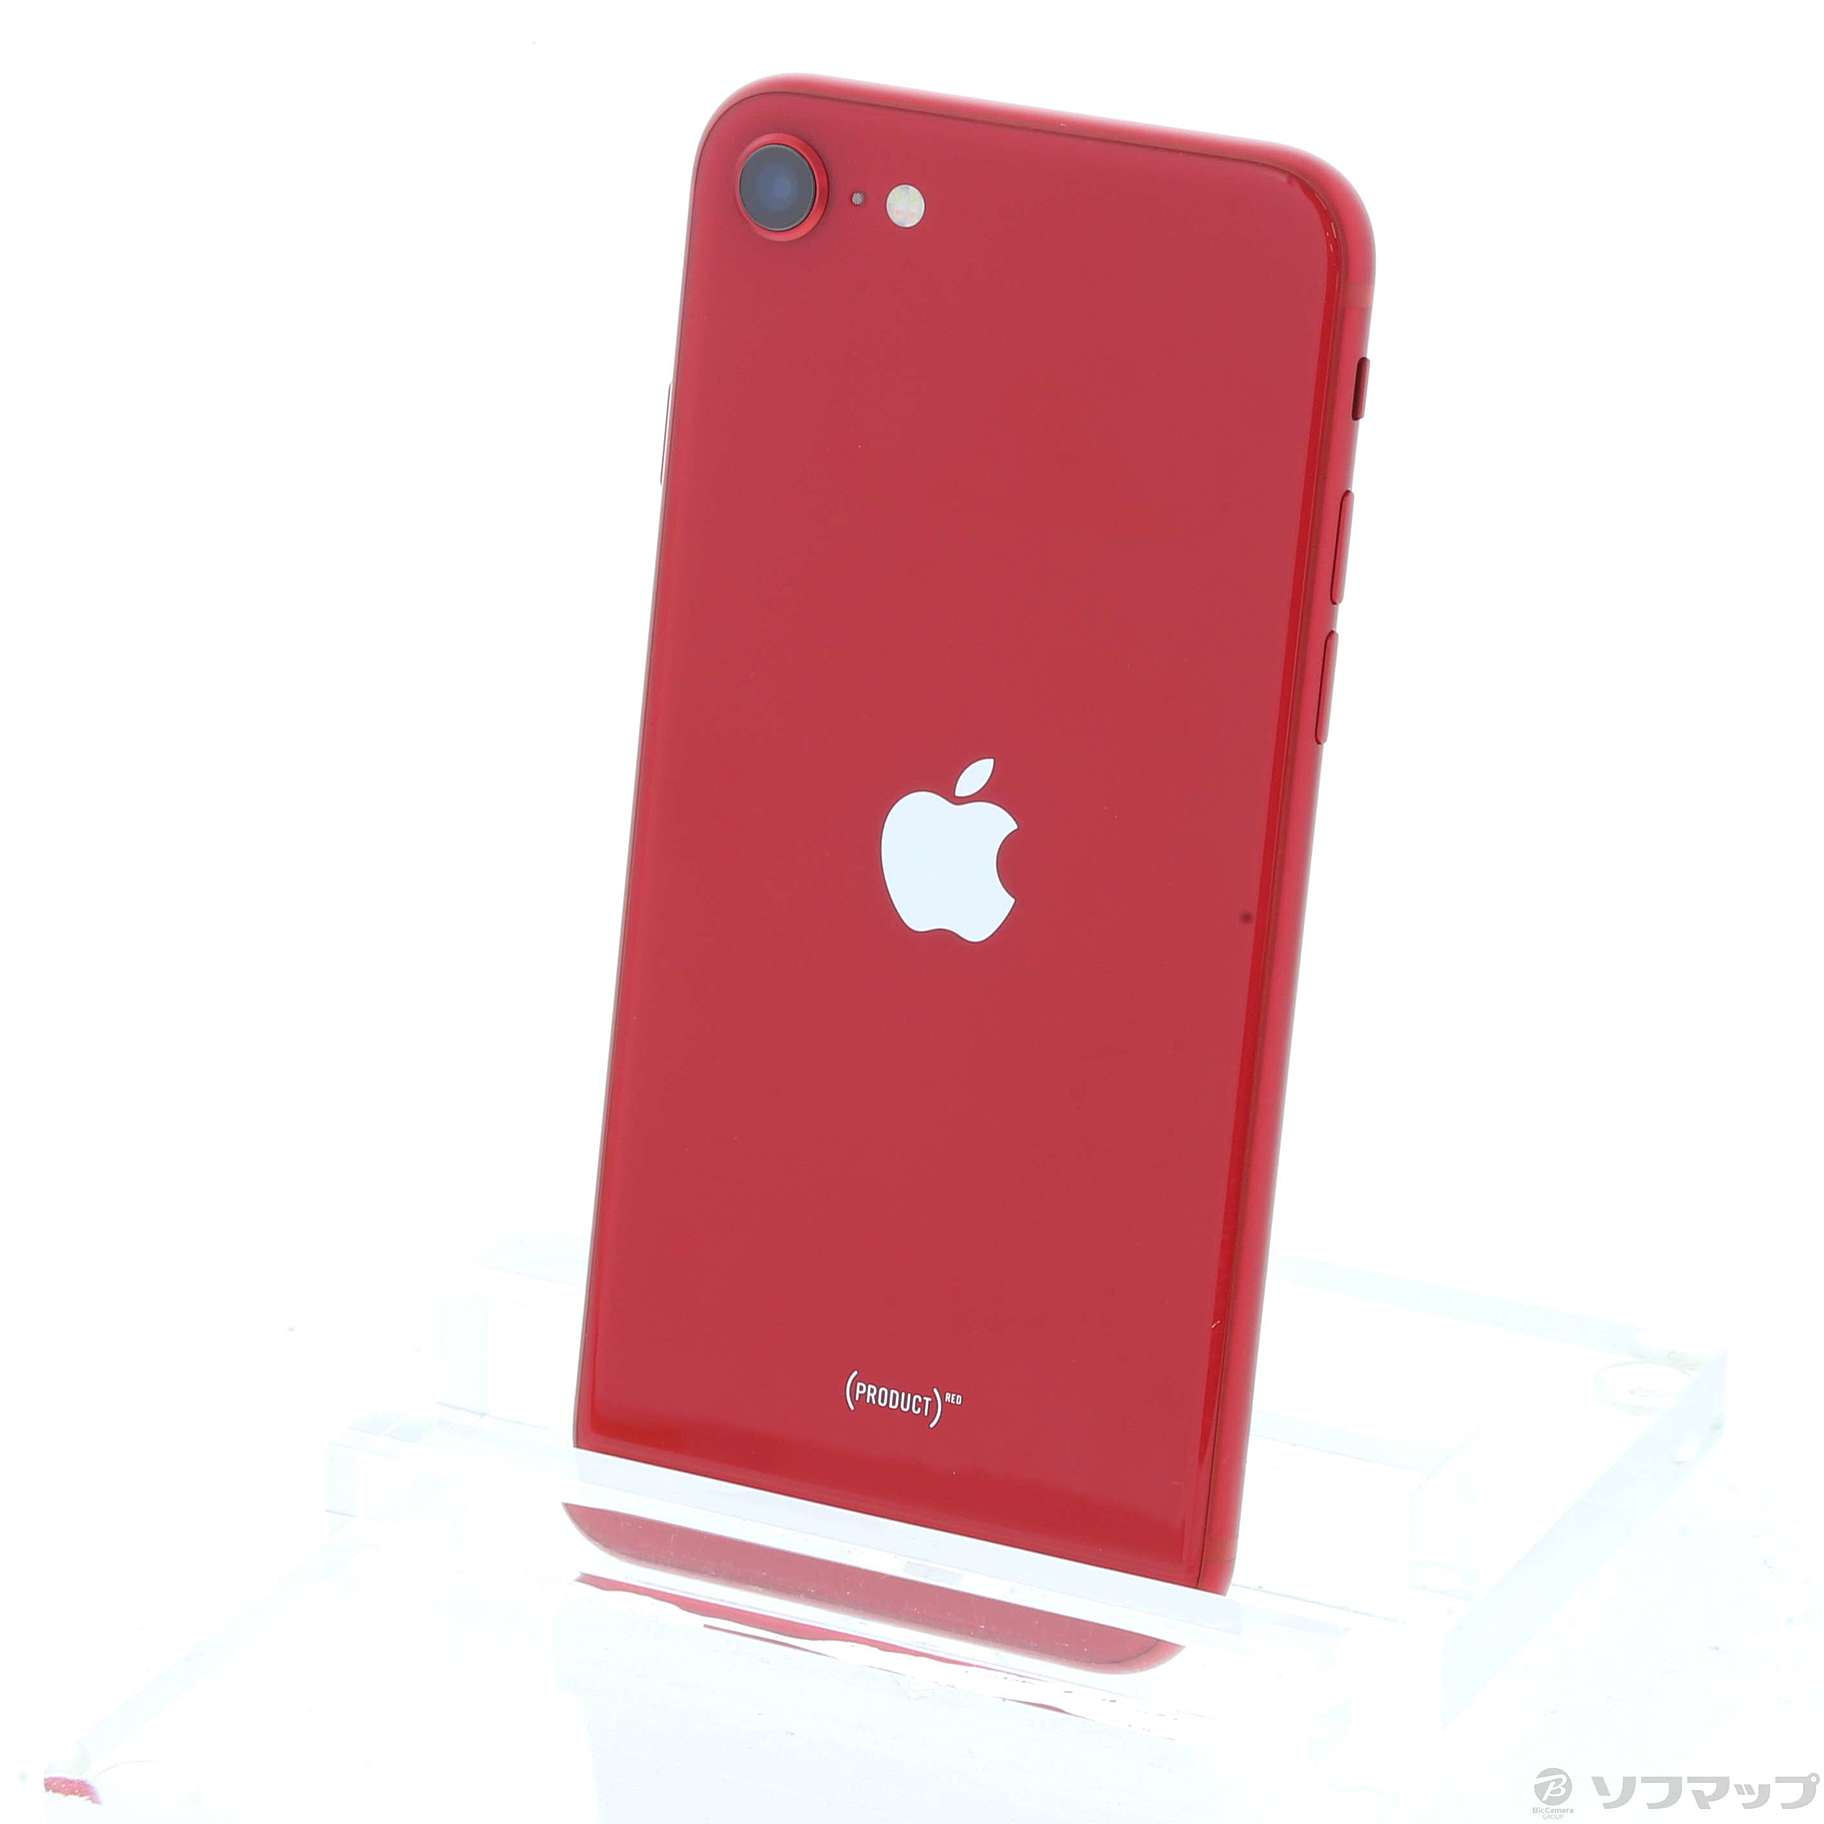 アップル iPhoneSE 第2世代 64GB レッド クリアケースSIMフリー